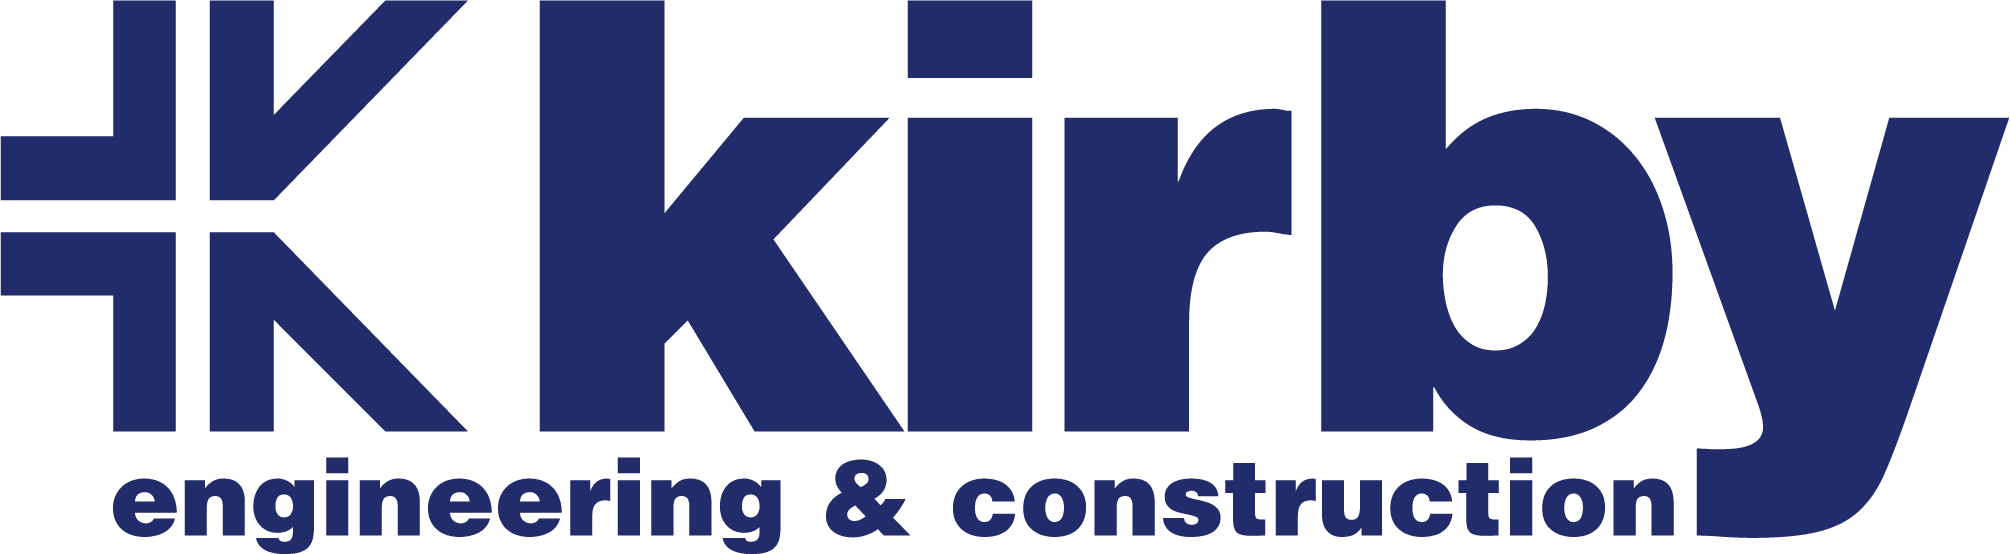 Kirby Group Logo, Real Company